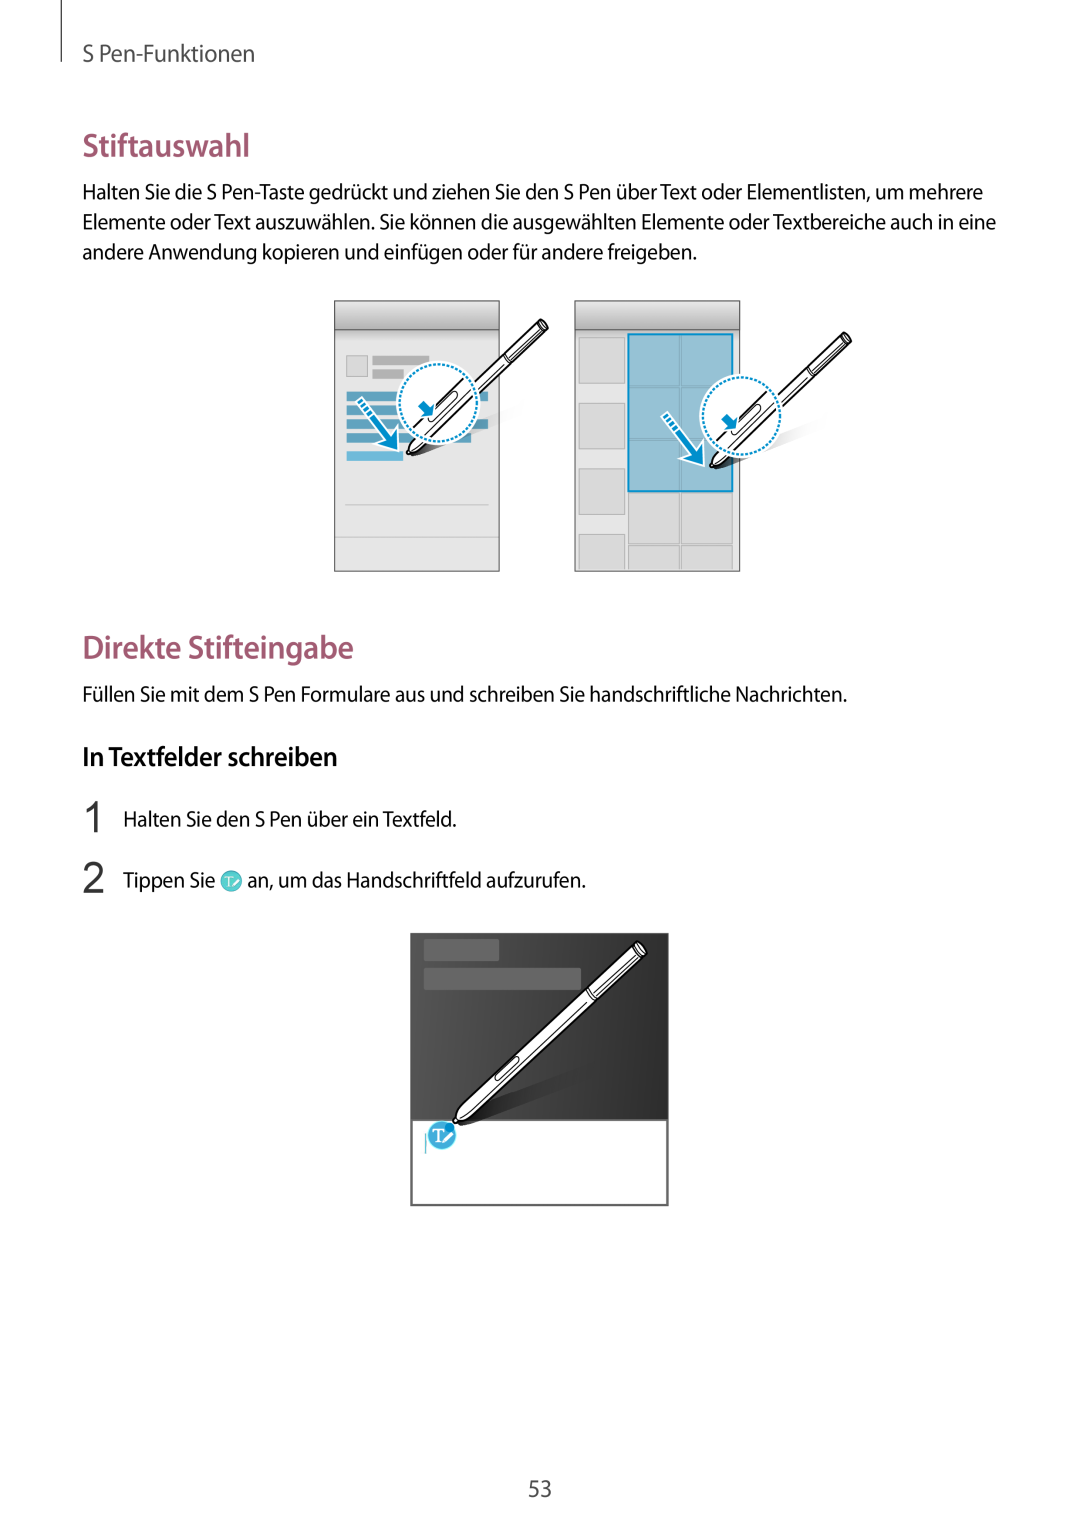 Samsung SM-N910FZKETPH, SM-N910FZWEEUR manual Stiftauswahl, Direkte Stifteingabe, In Textfelder schreiben, S Pen-Funktionen 